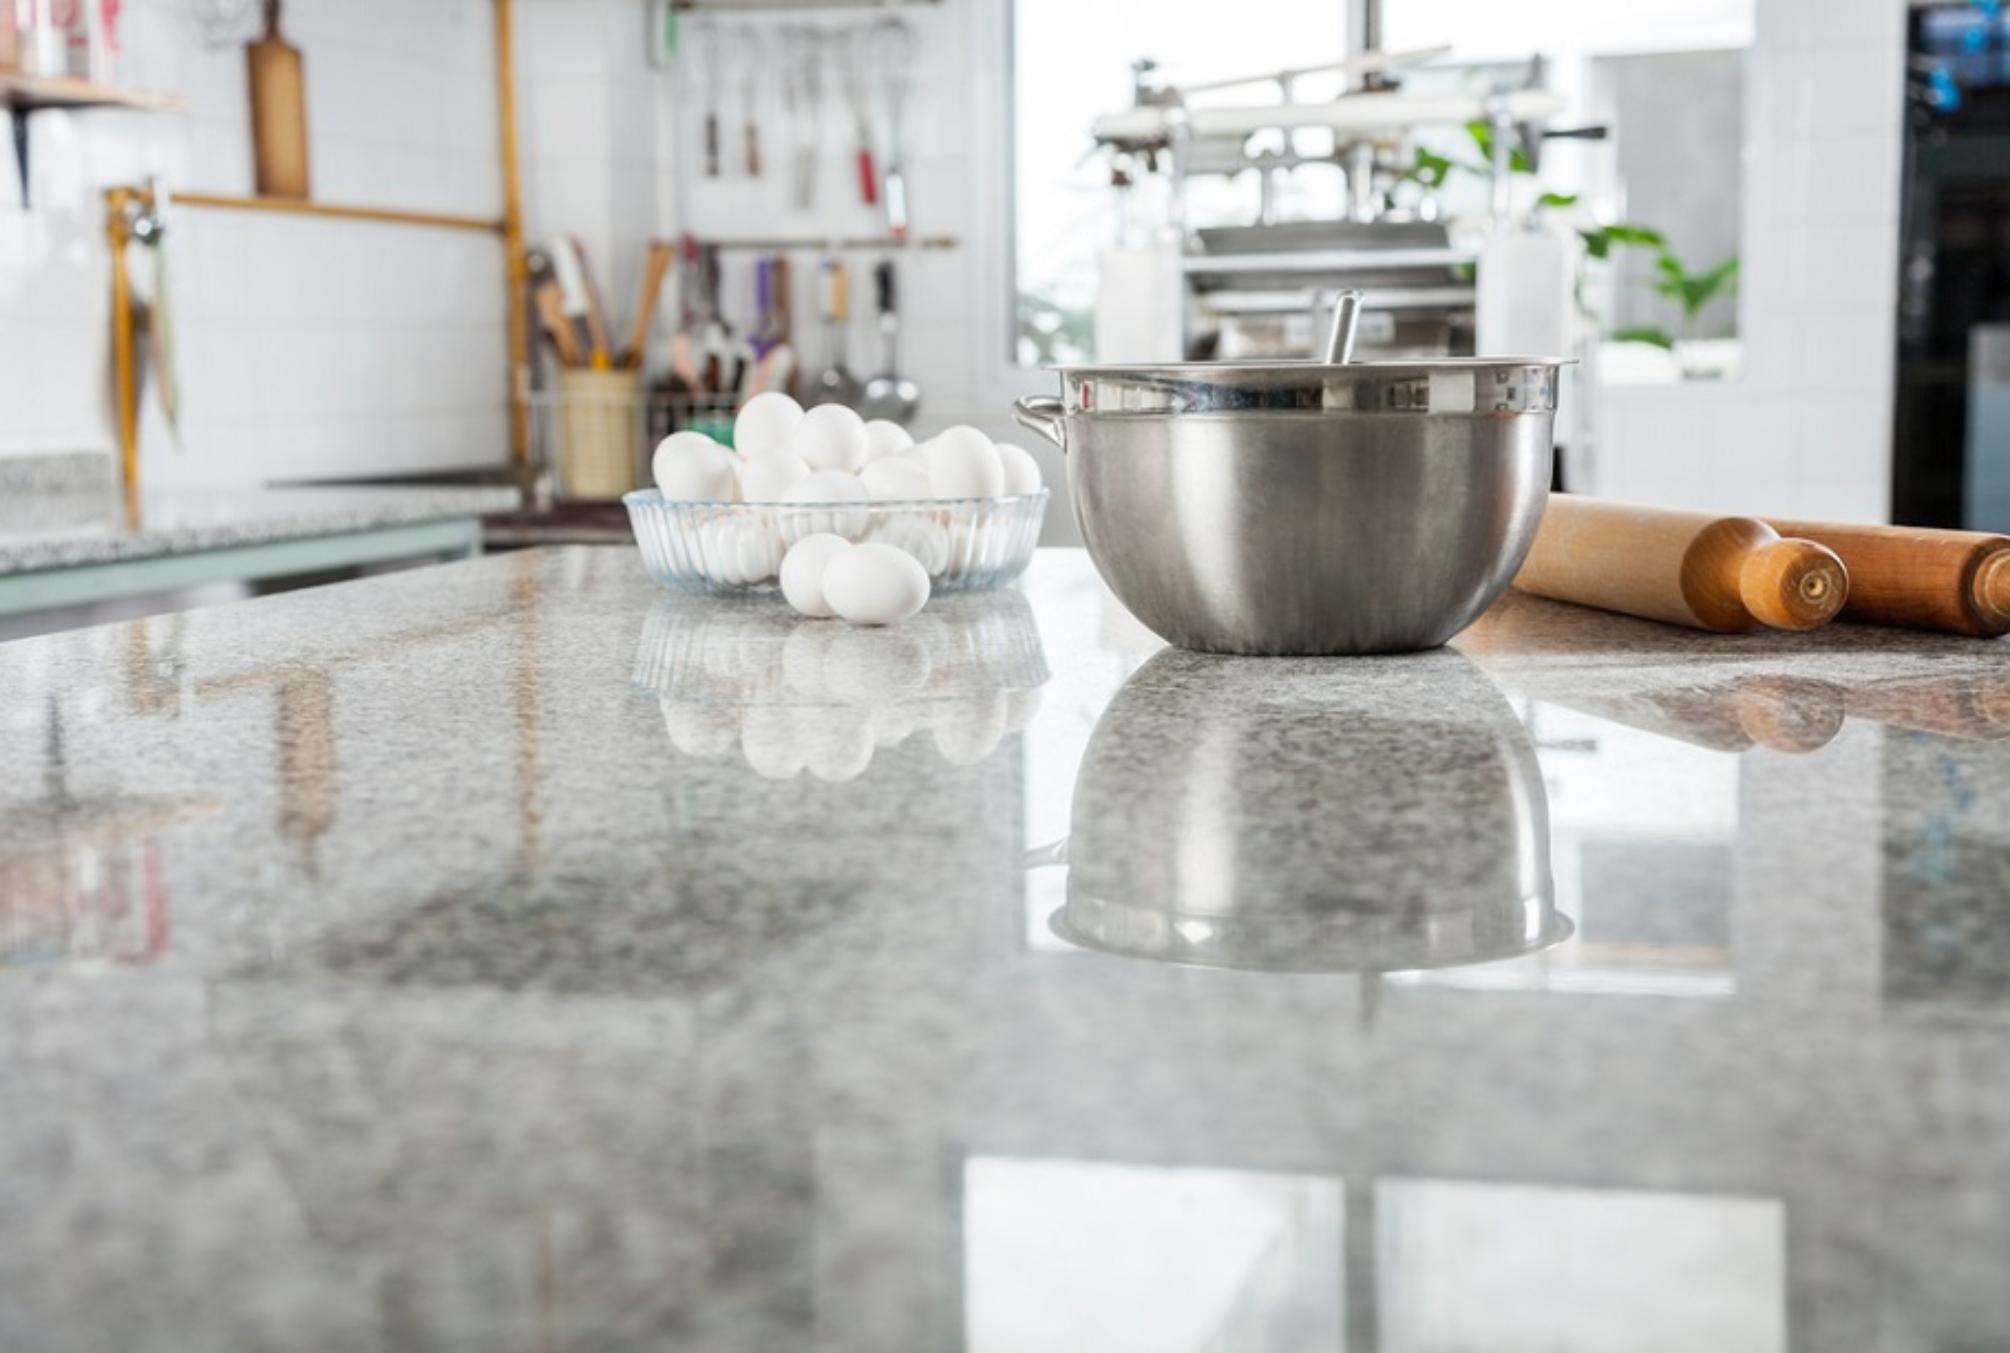 Άλατα λάδια και δύσκολοι λεκέδες από σάλτσες στον μαρμάρινο πάγκο της κουζίνας: Πως θα τον καθαρίσεις χωρίς να τον καταστρέψεις